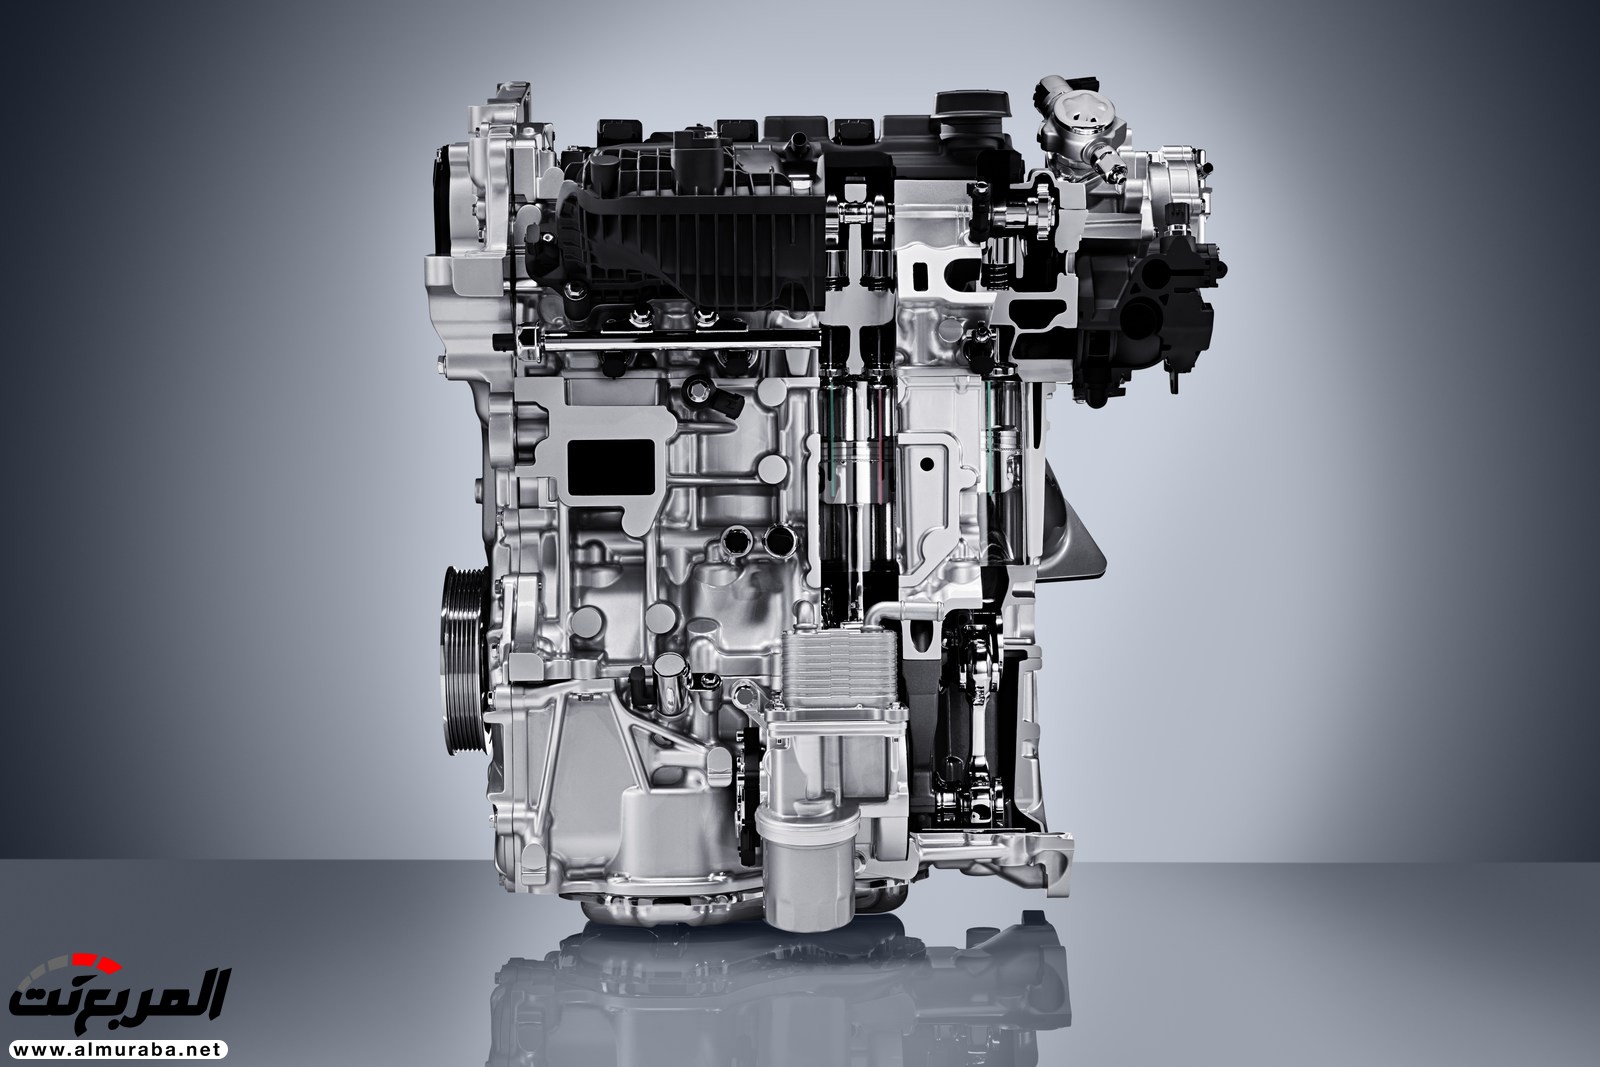 إنفينيتي QX50 الجديدة كلياً 2019 تظهر رسمياً بمحرك هو الأكثر تطوراً 8